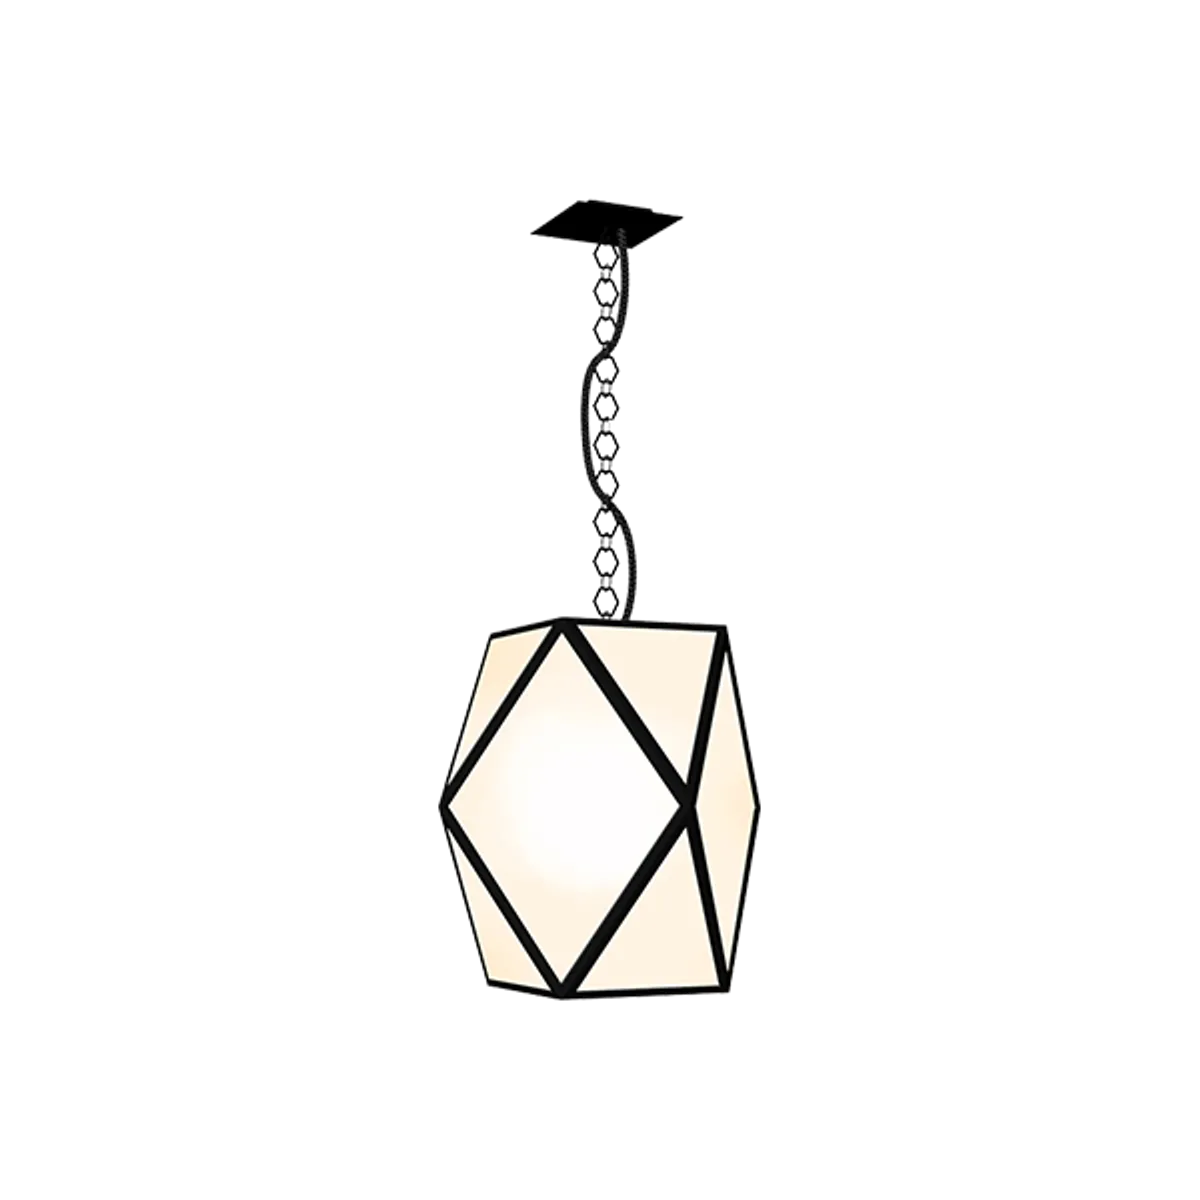 Web Muse Lantern Hanging Light